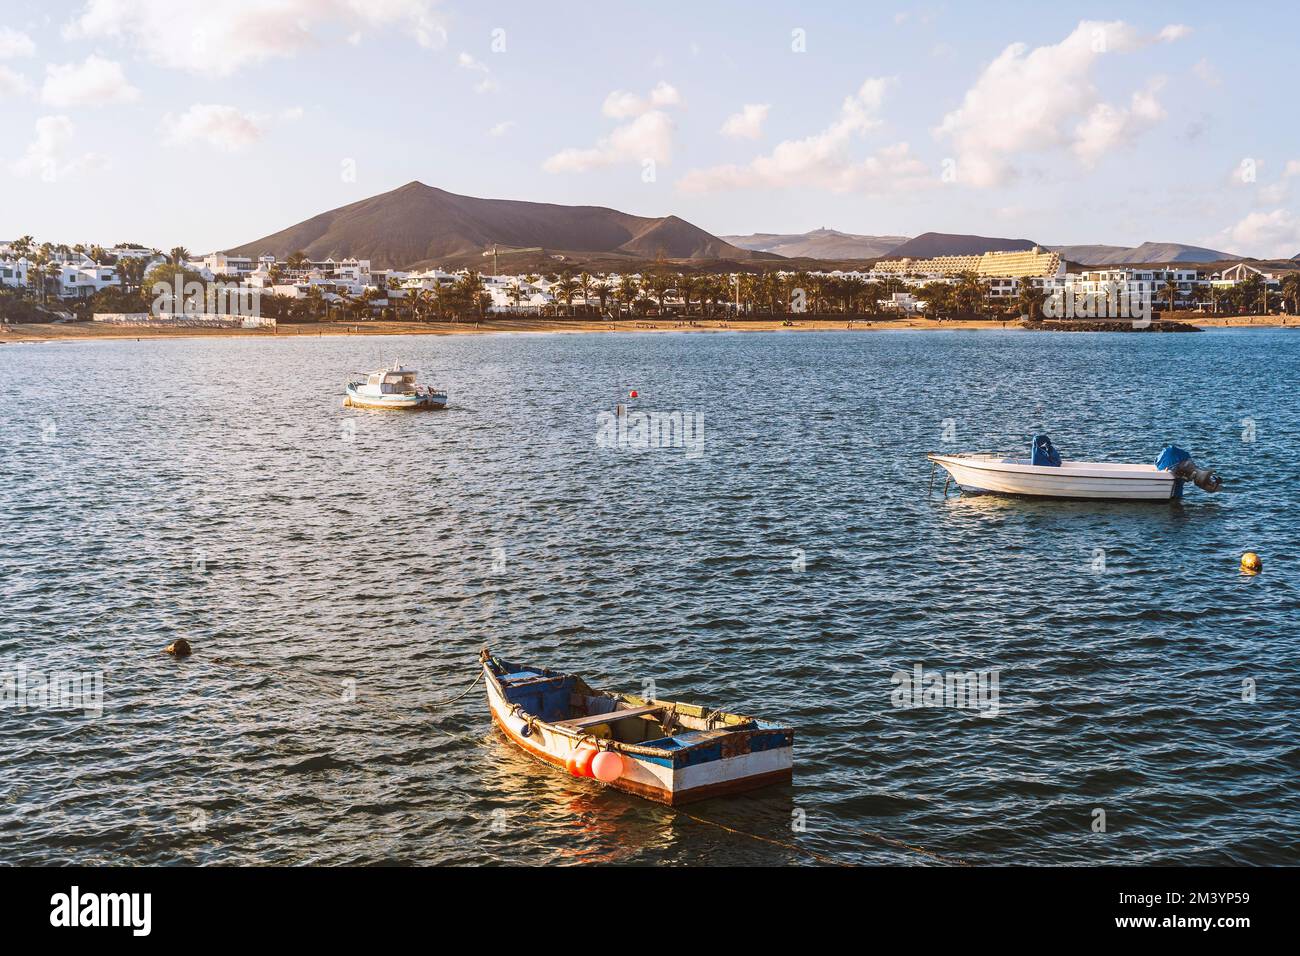 Vue sur la station balnéaire nommée Costa Teguise avec des bateaux en premier plan, Lanzarote, Canary Island, Espagne Banque D'Images